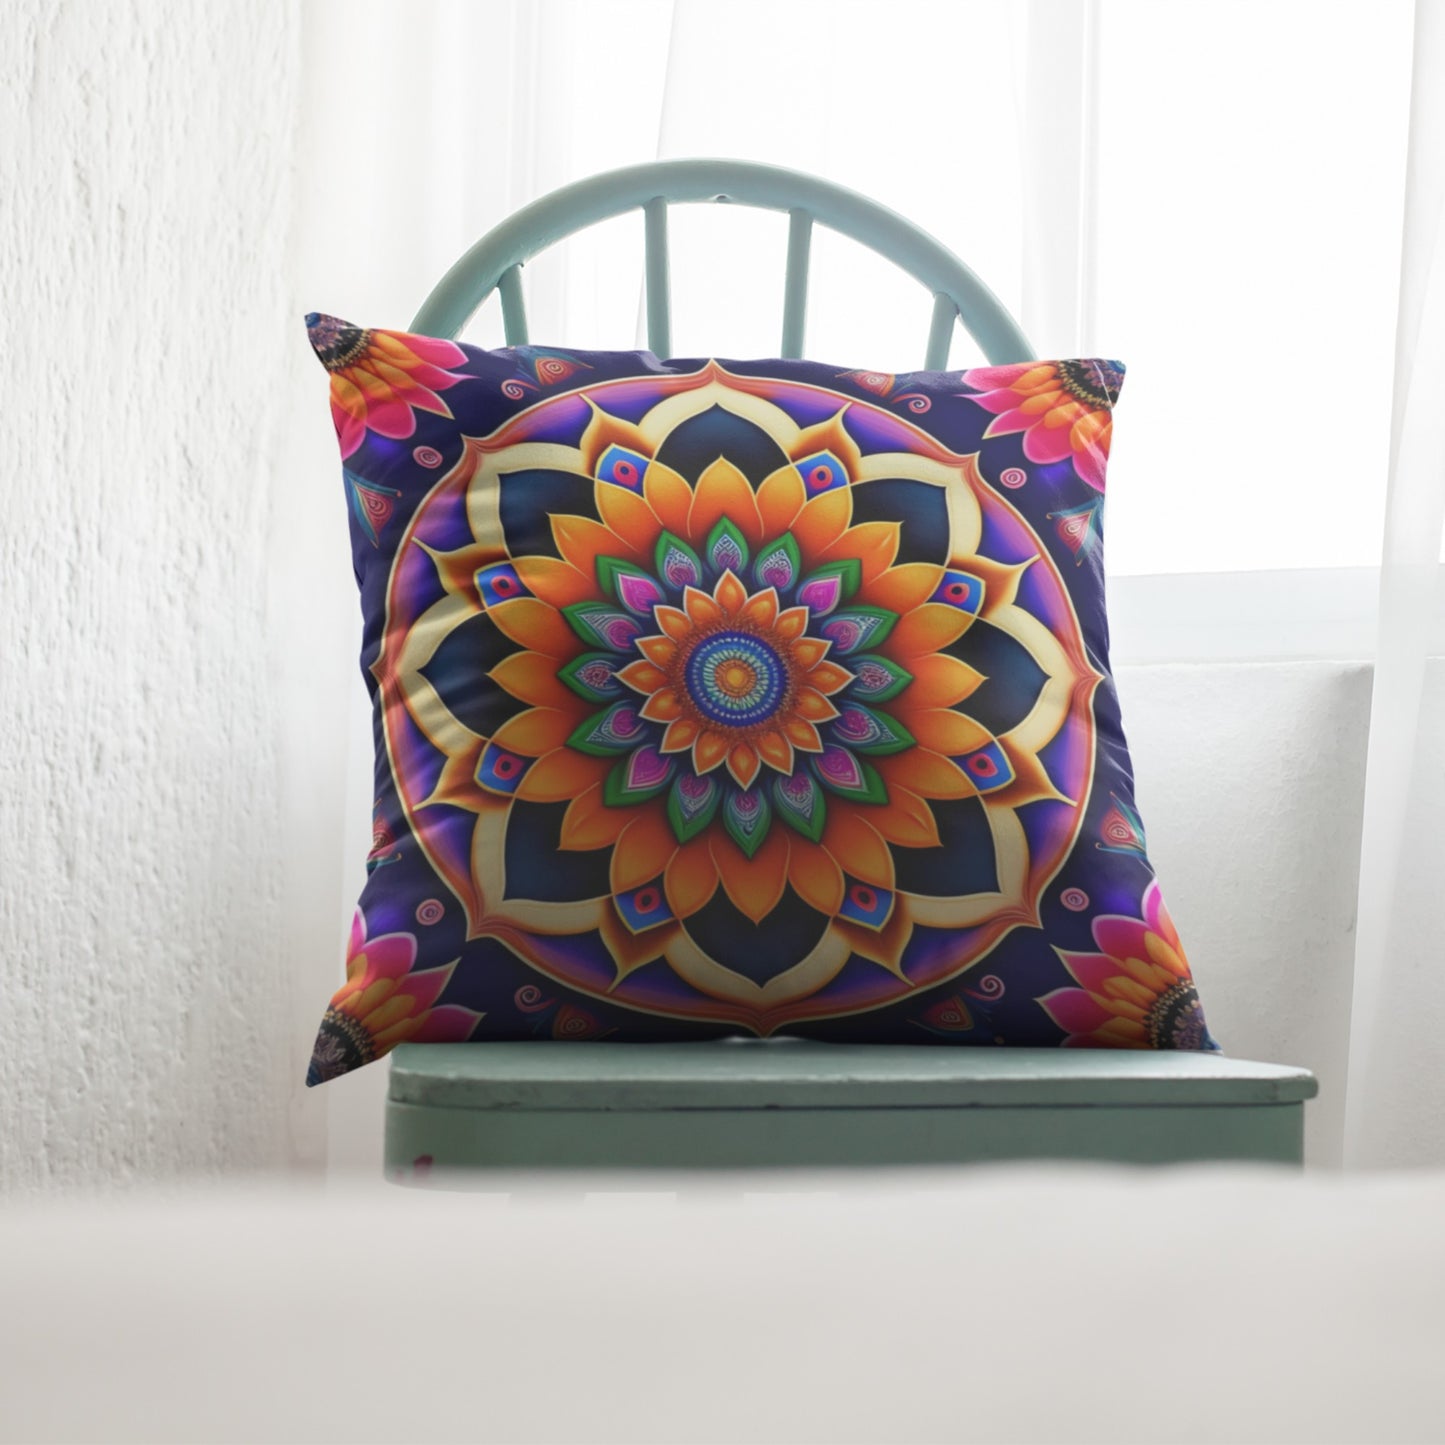 Artistic Colorful Mandala Pillow Design